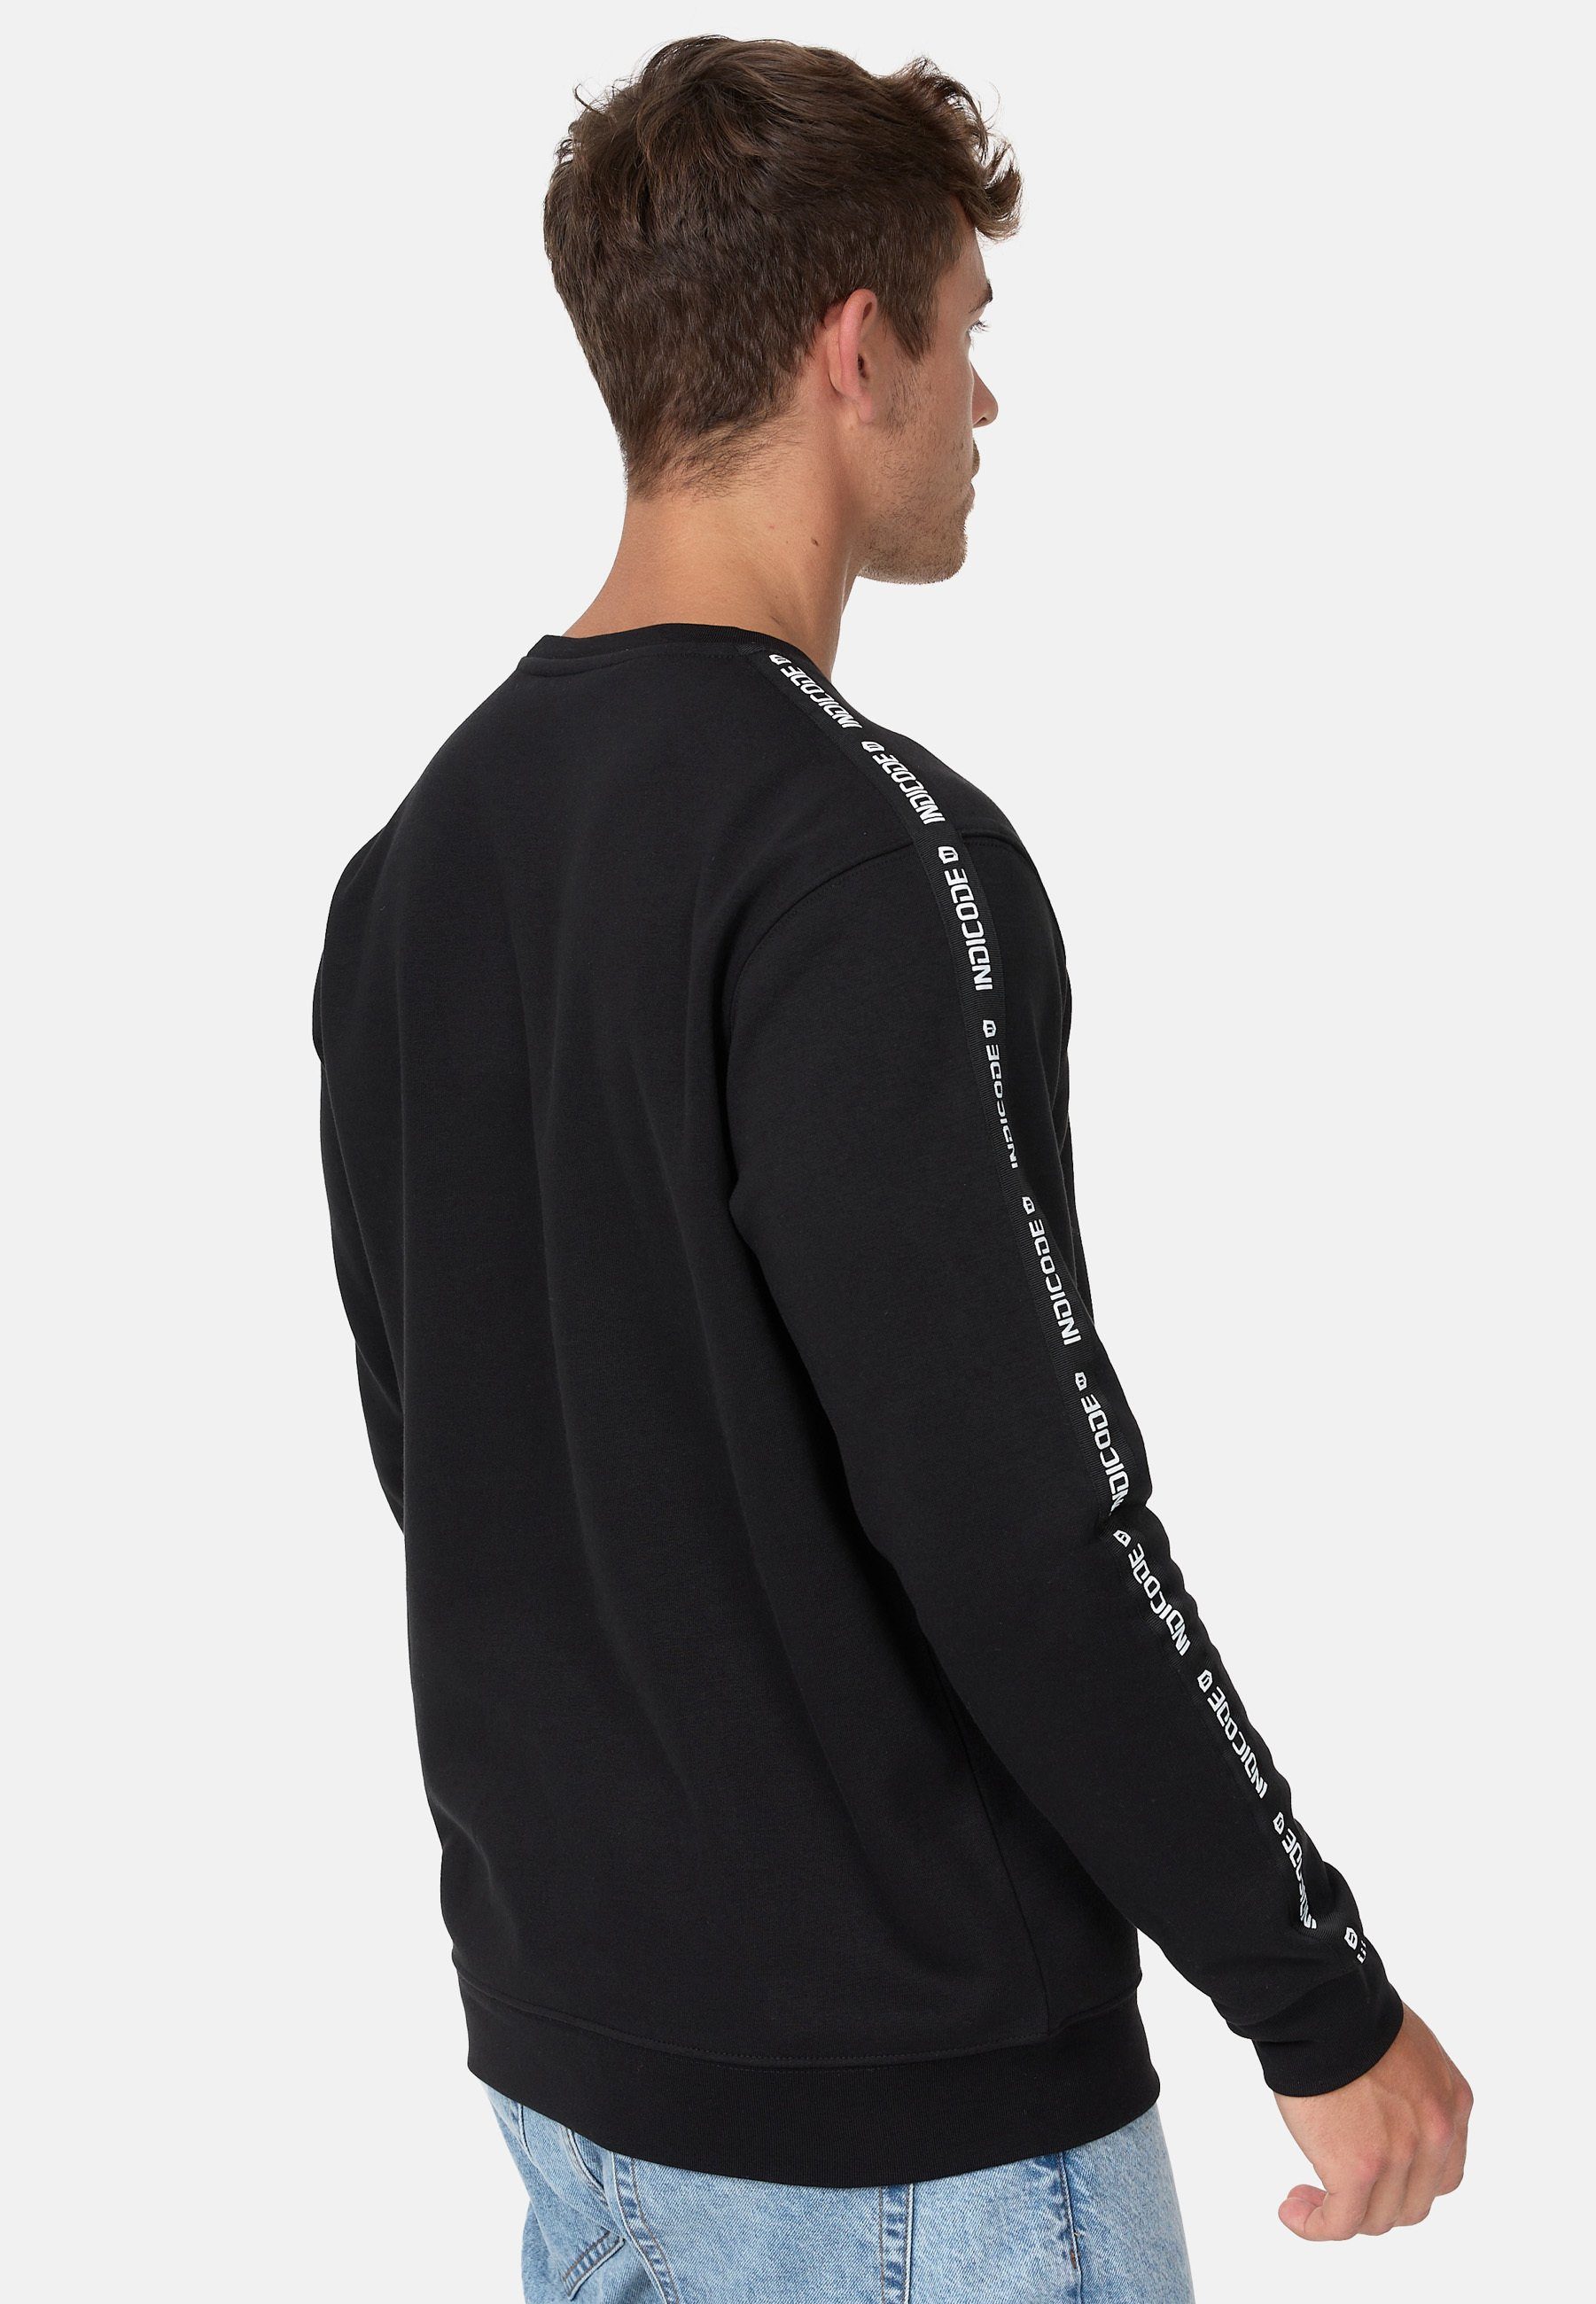 Indicode Sweatshirt Black INKorbin